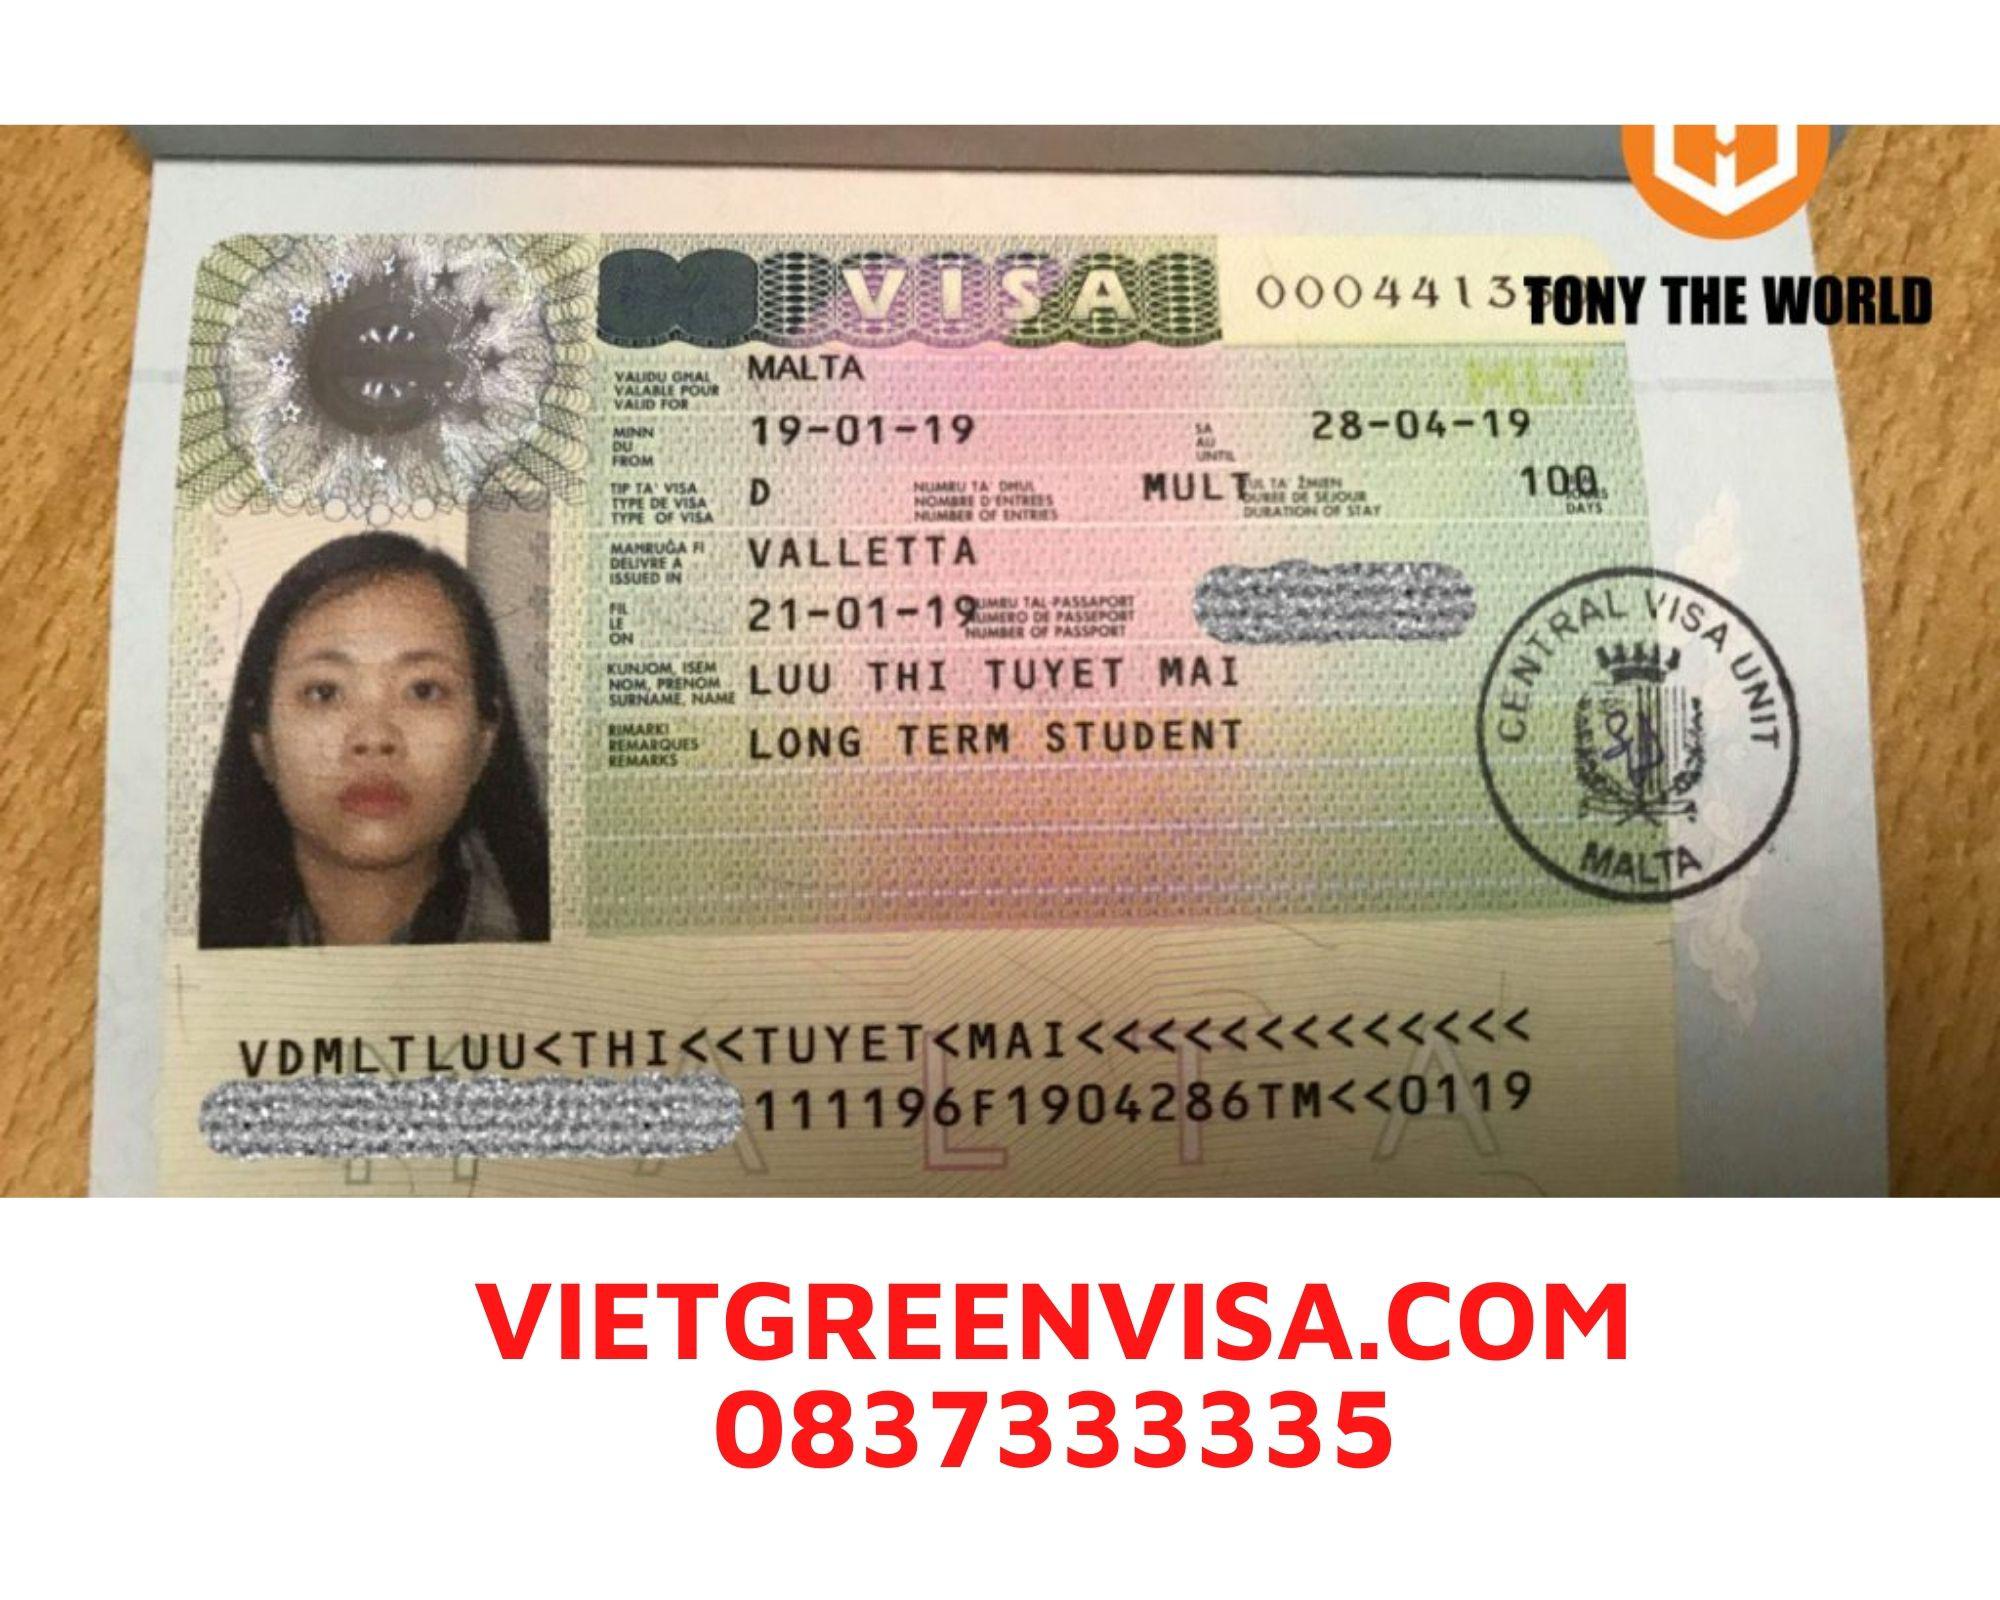 Dịch vụ đặt lịch hẹn nộp hồ sơ visa Malta